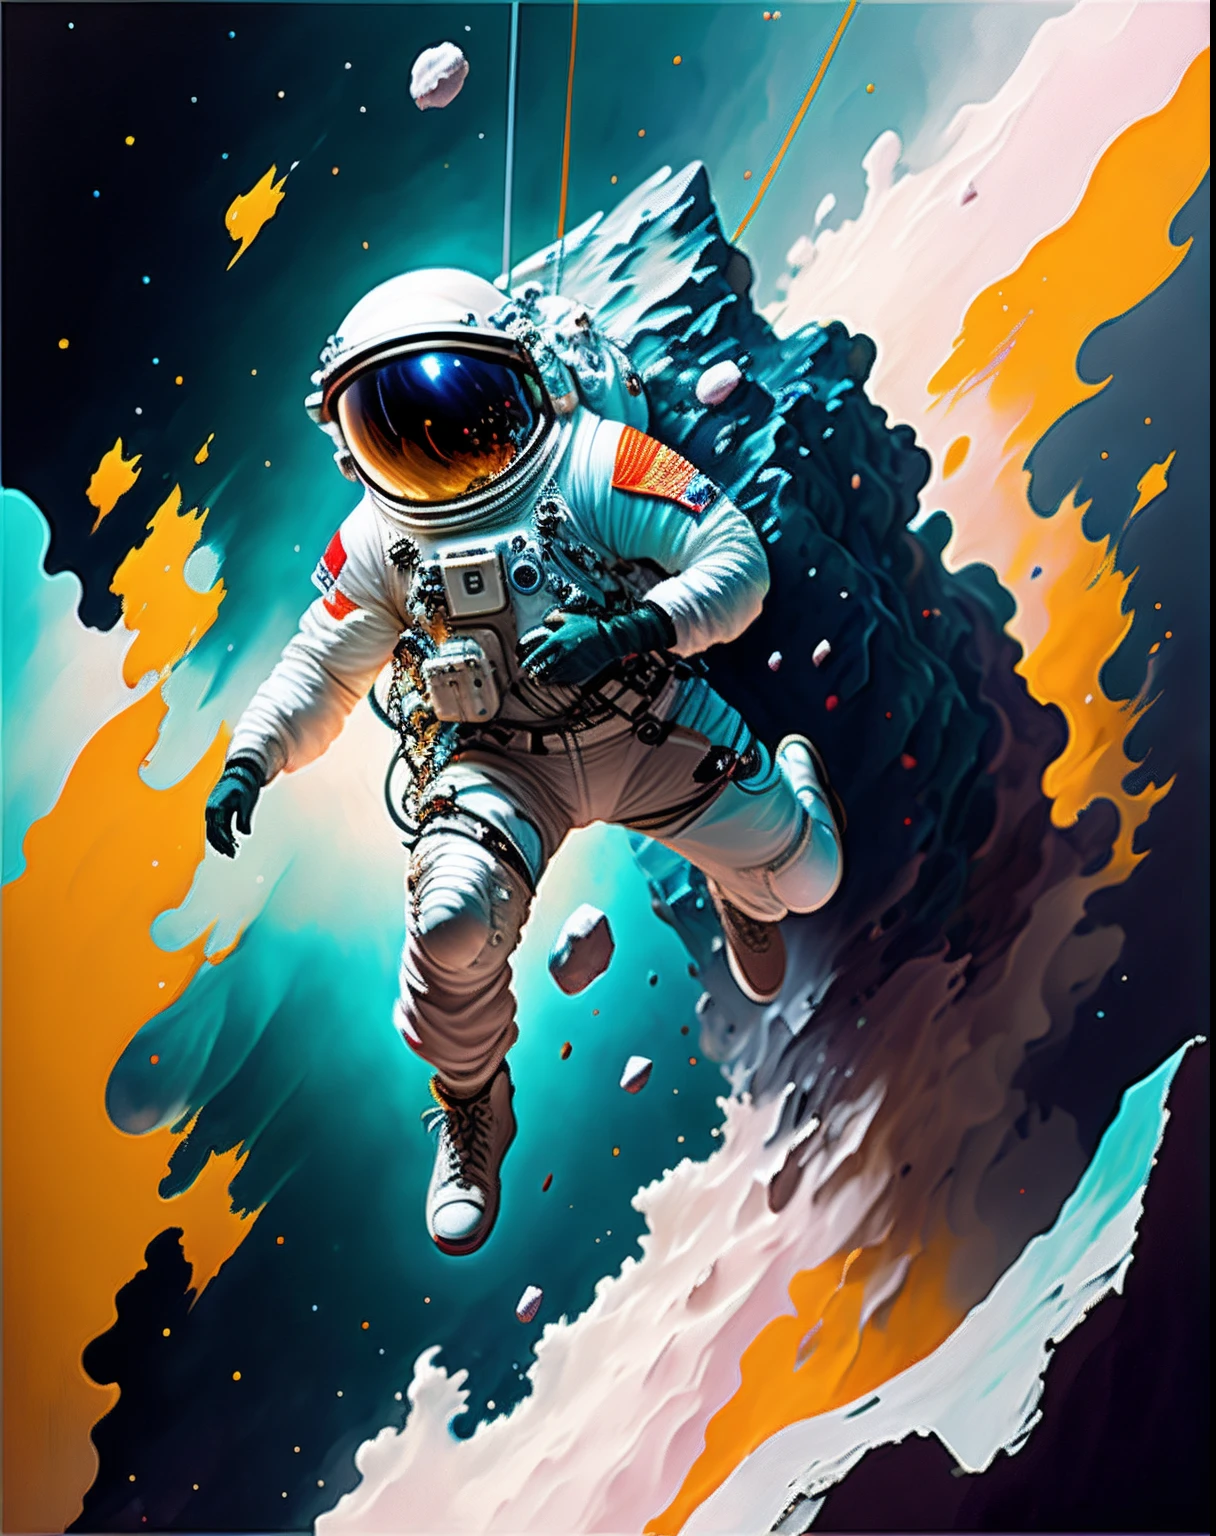 космонавт,  восхождение на астероид,  рендеринг персонажа, модель ультра высокого качества, эфирный фон, абстрактная красота, взрывной объемный, картина маслом, тяжелые удары, краска капает